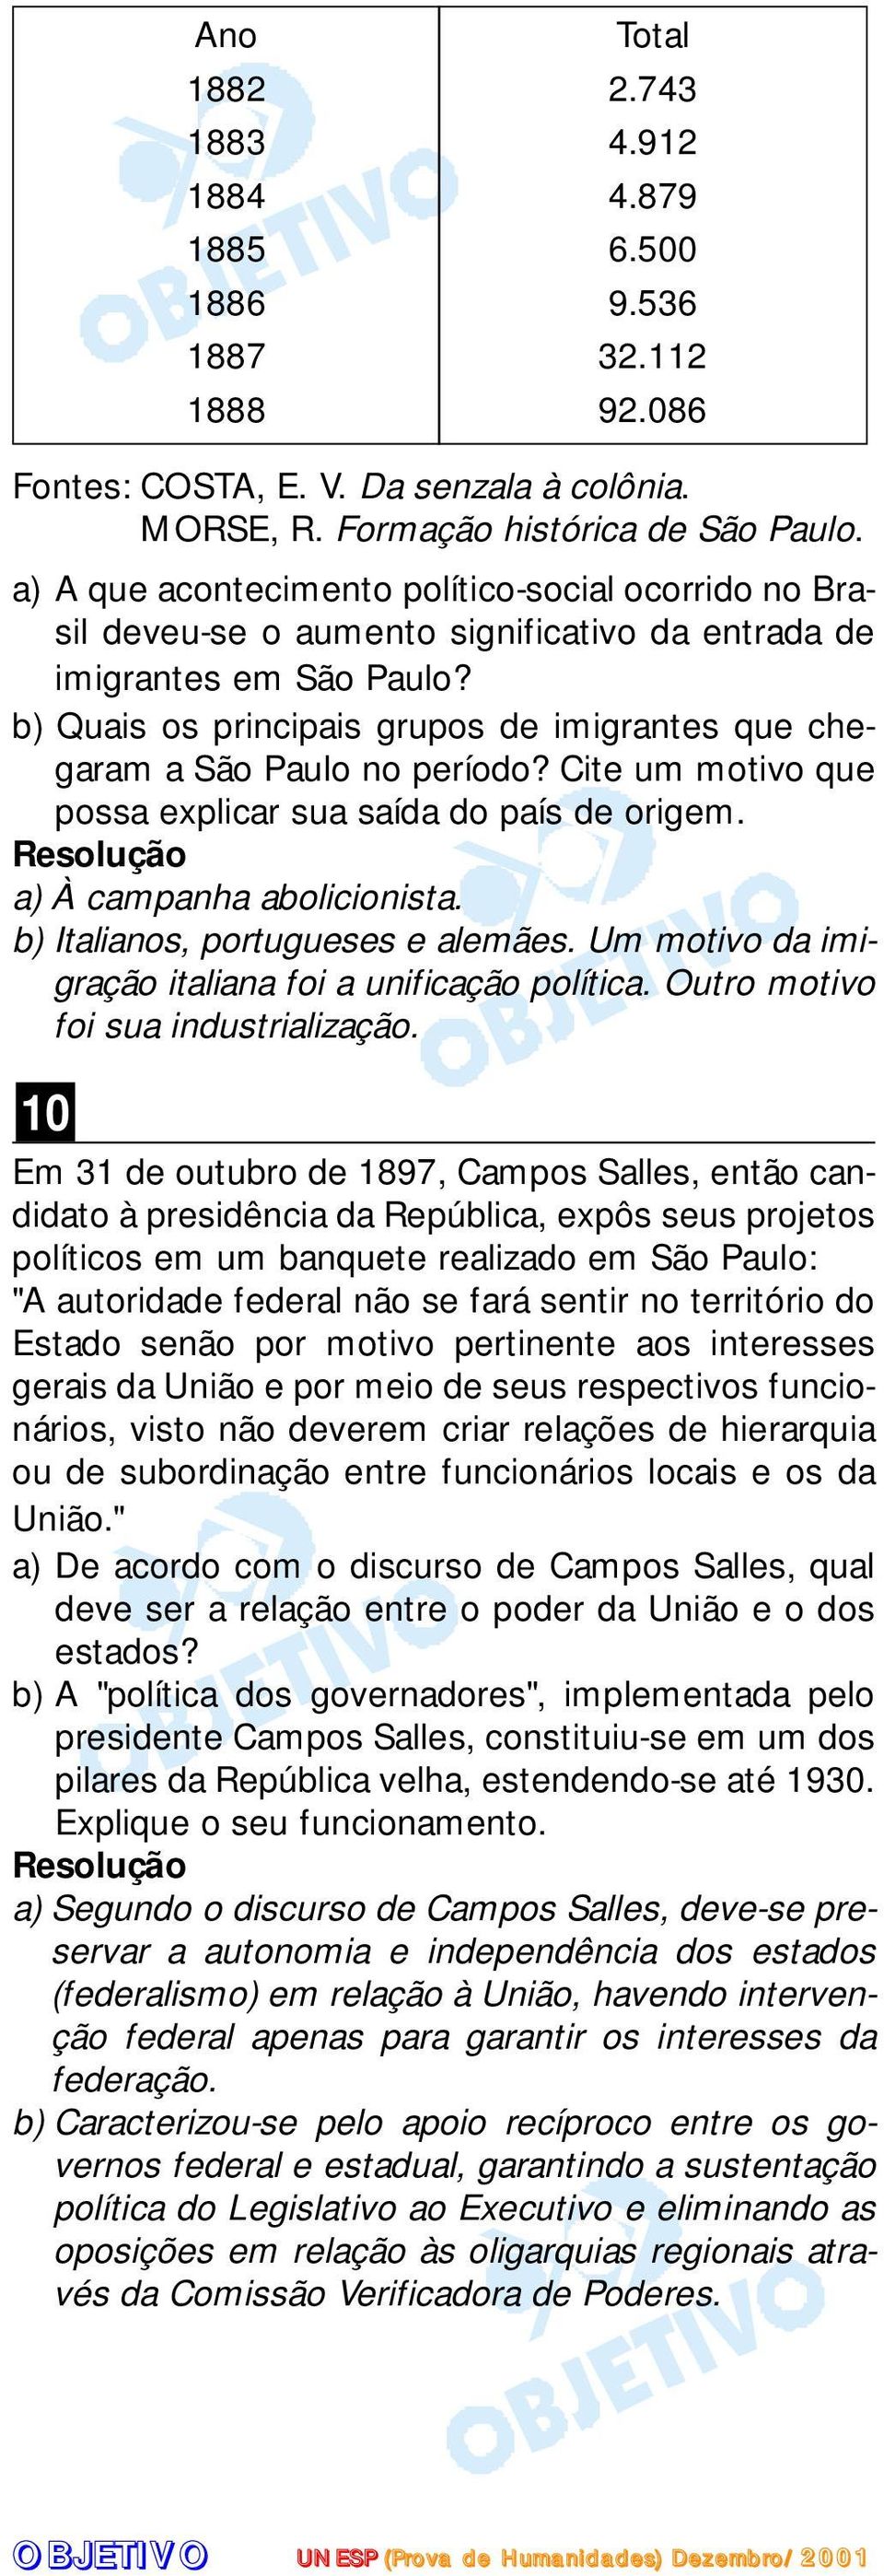 b) Quais os principais grupos de imigrantes que chegaram a São Paulo no período? Cite um motivo que possa explicar sua saída do país de origem. a) À campanha abolicionista.